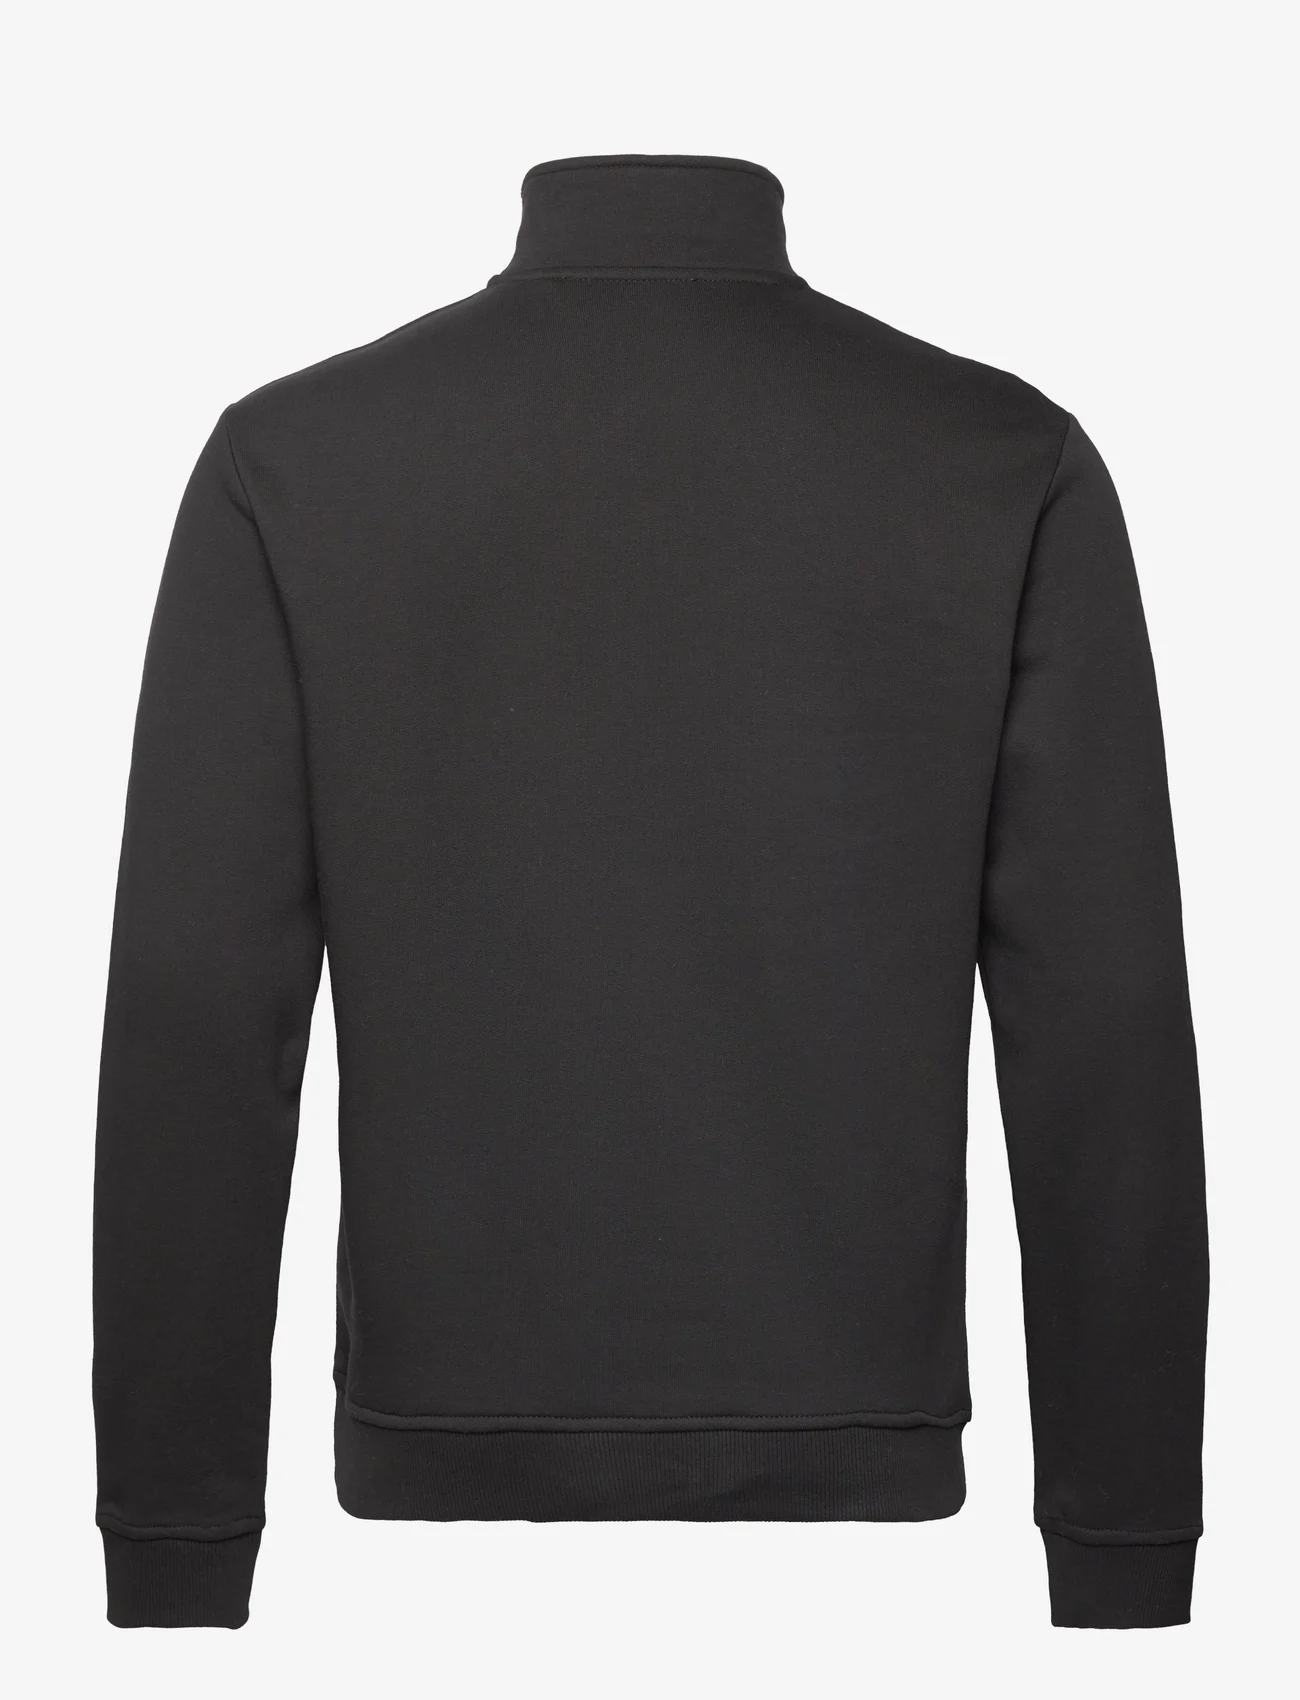 Les Deux - Les Deux II Half-Zip Sweatshirt 2.0 - svetarit - black/platinum - 1